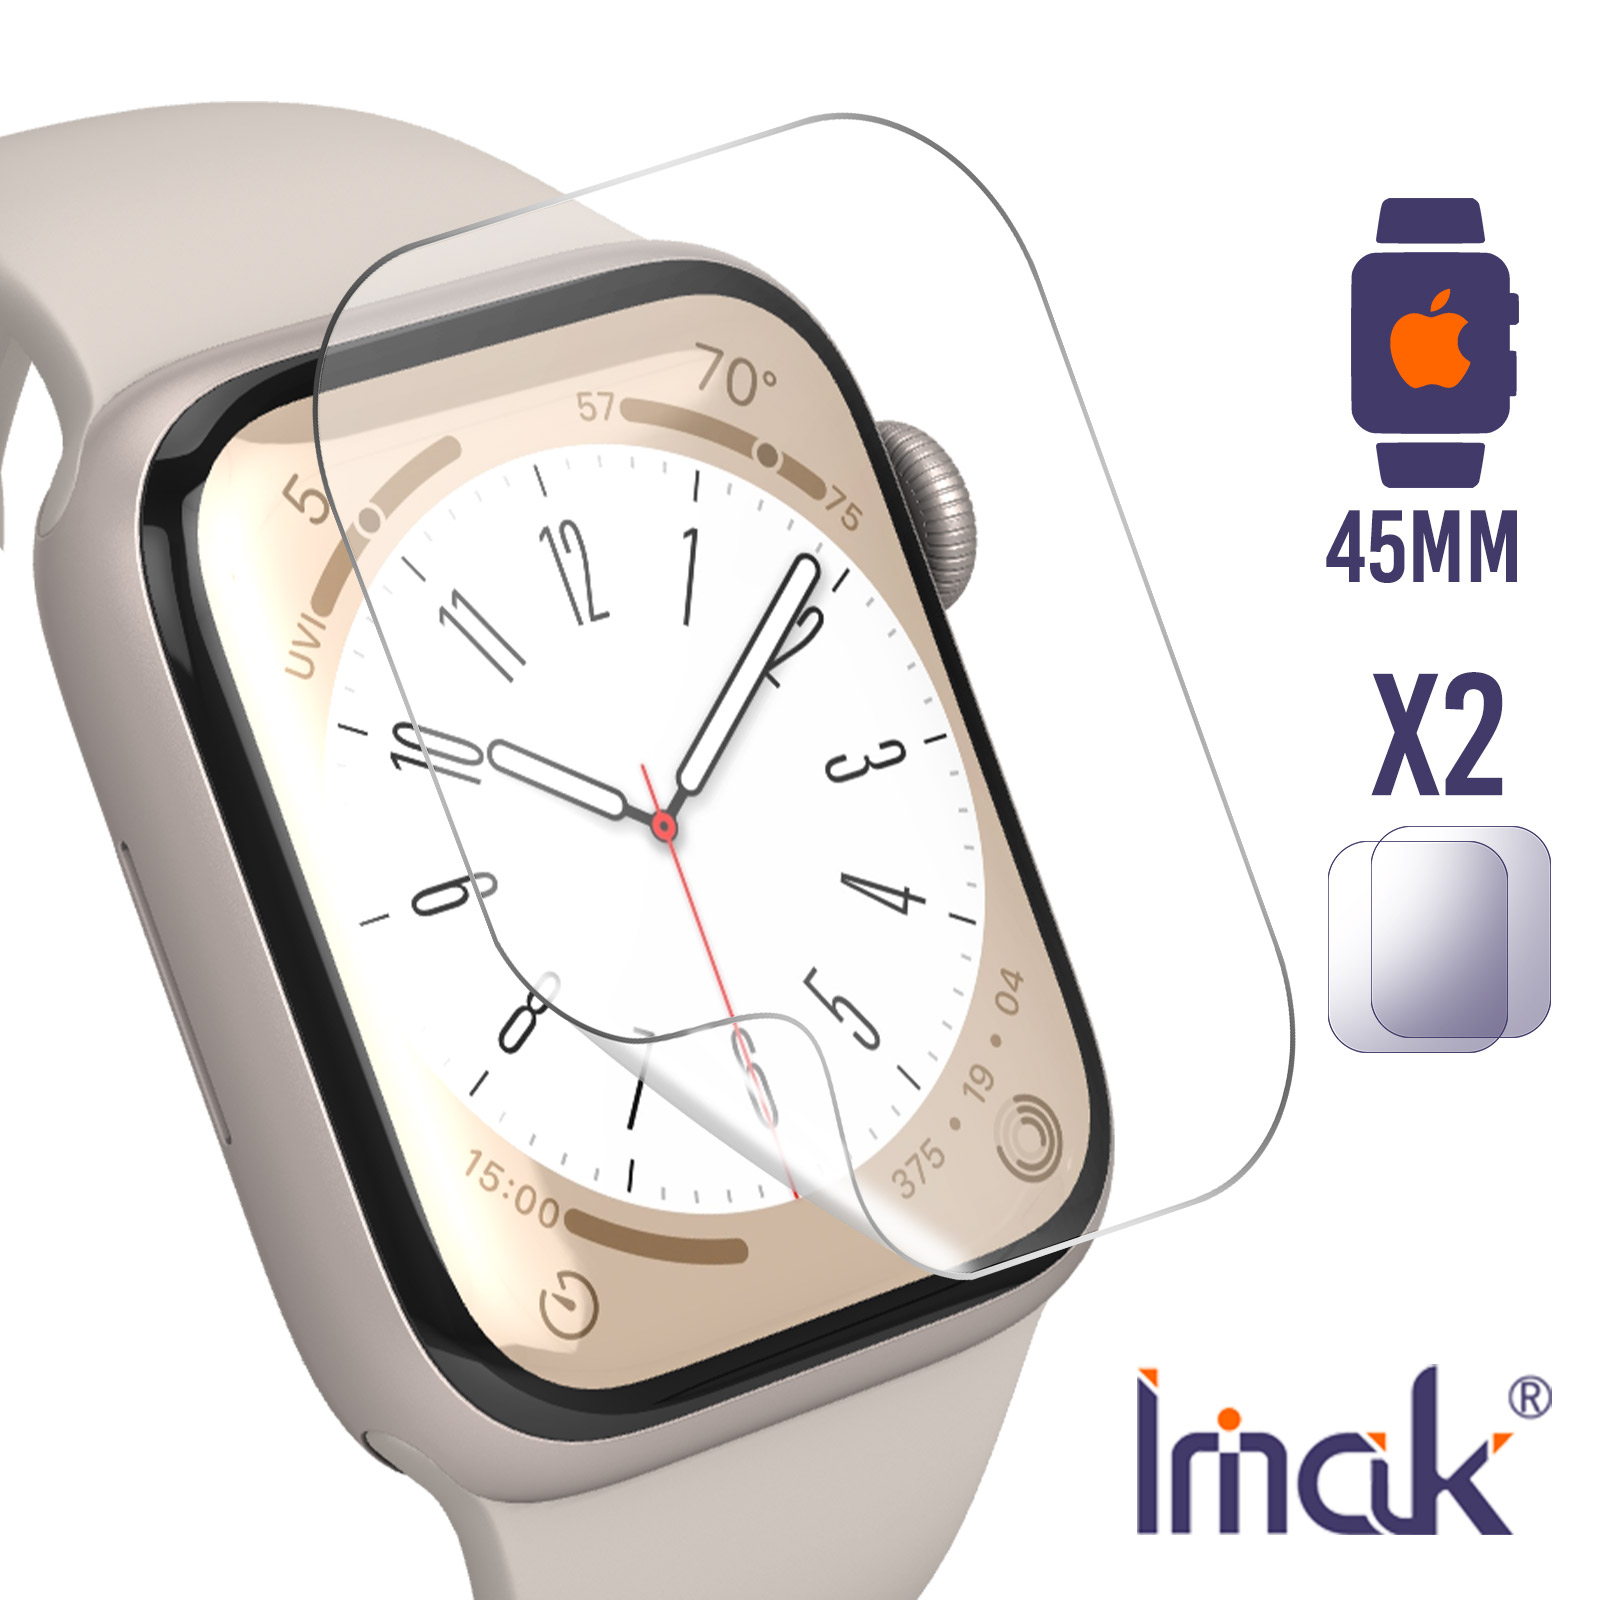 Acheter Des Accessoires Apple Watch - Gsm55